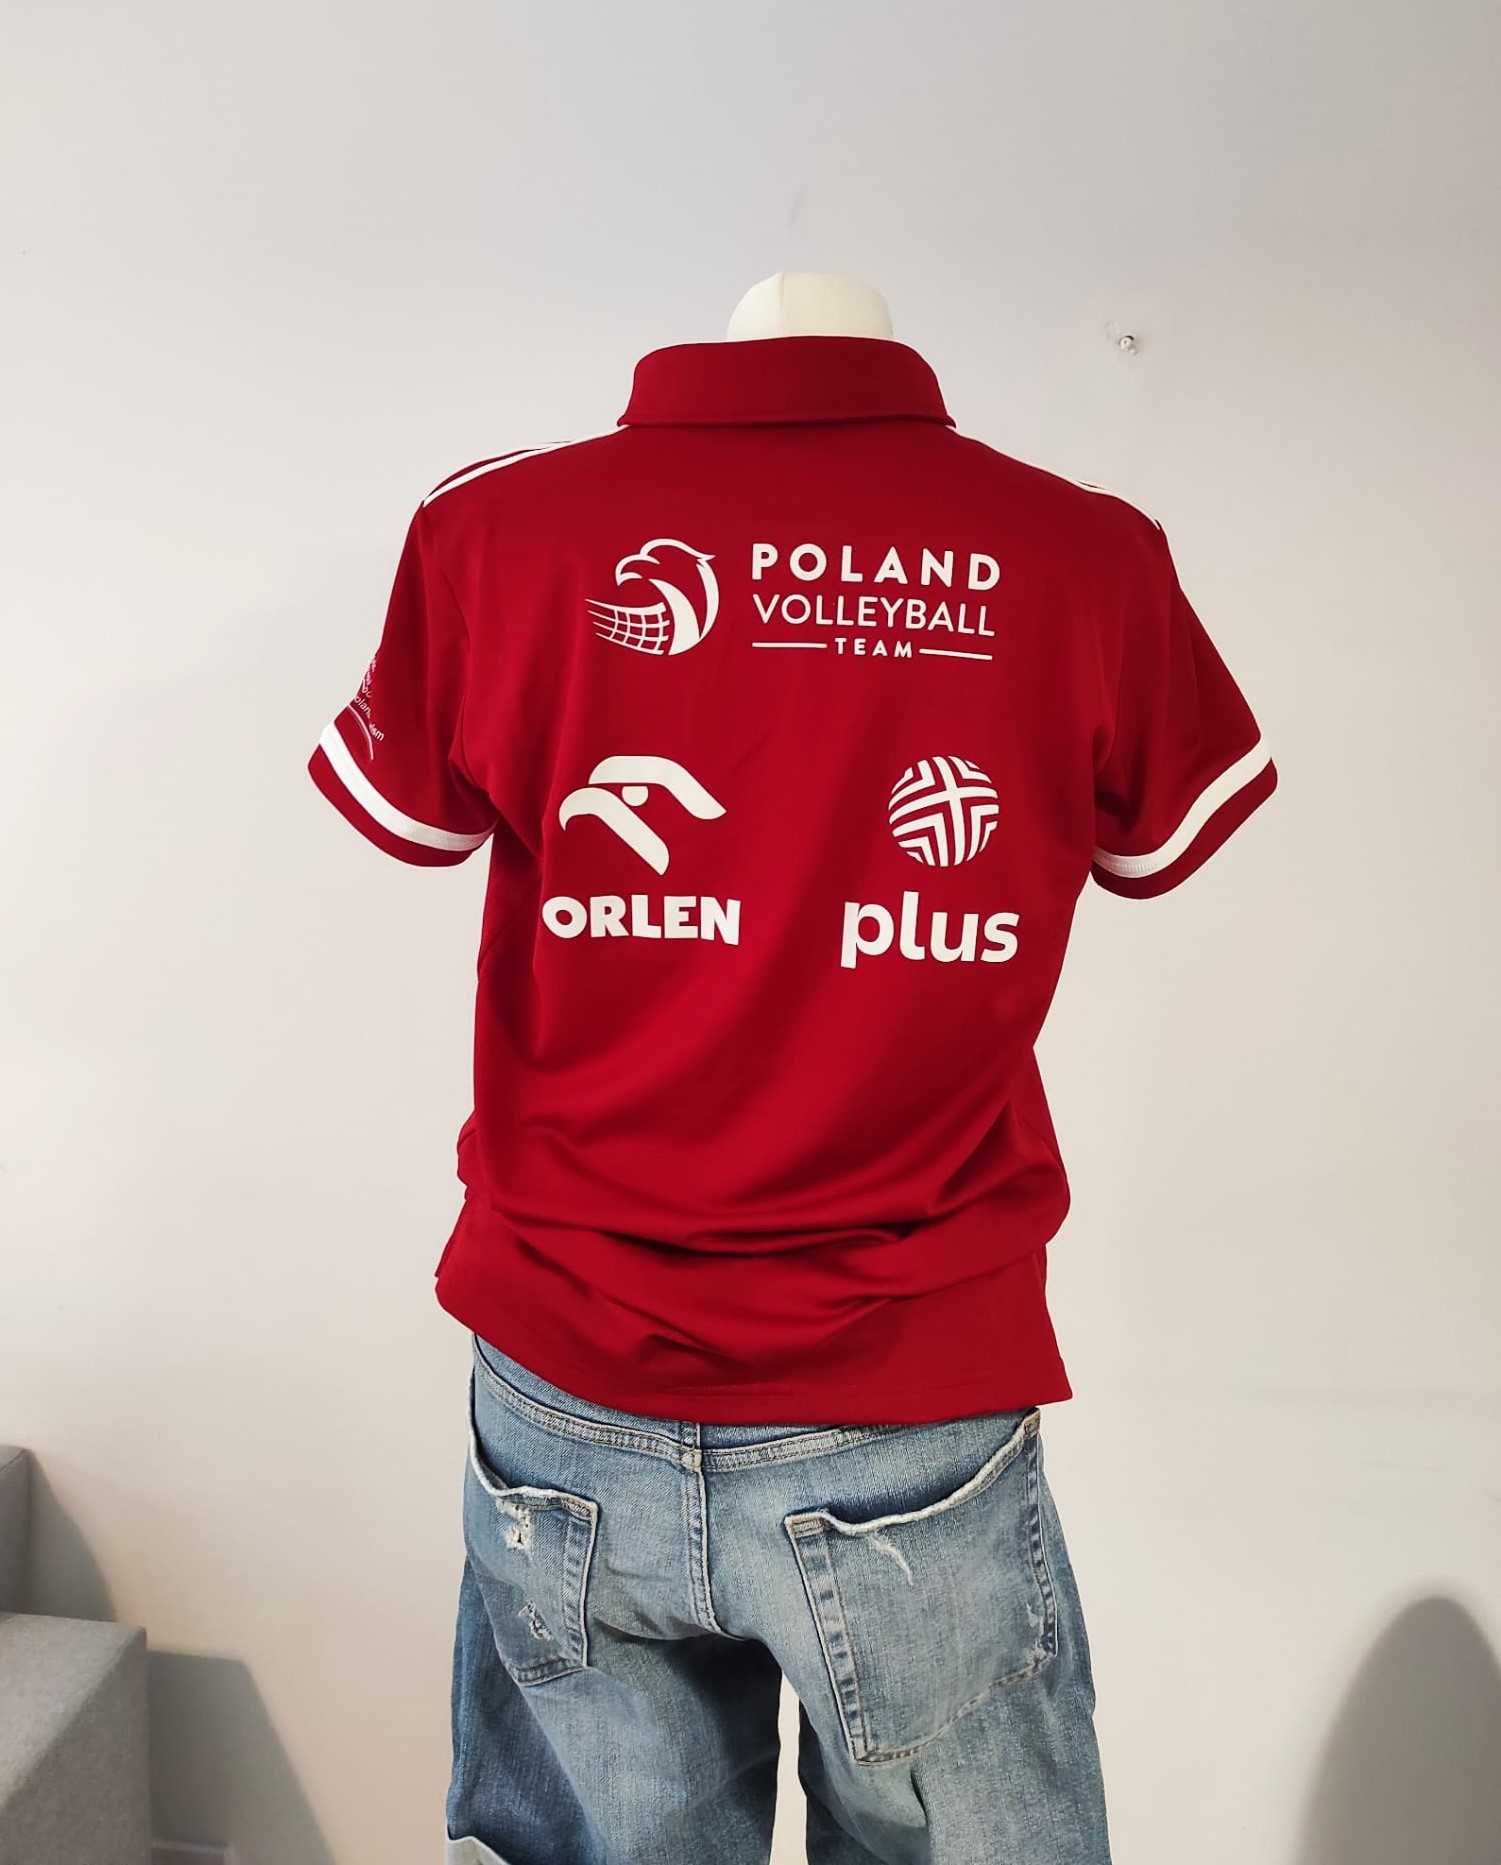 Koszulka Polo, Adidas, nowa, reprezentacja Polski, siatkówka